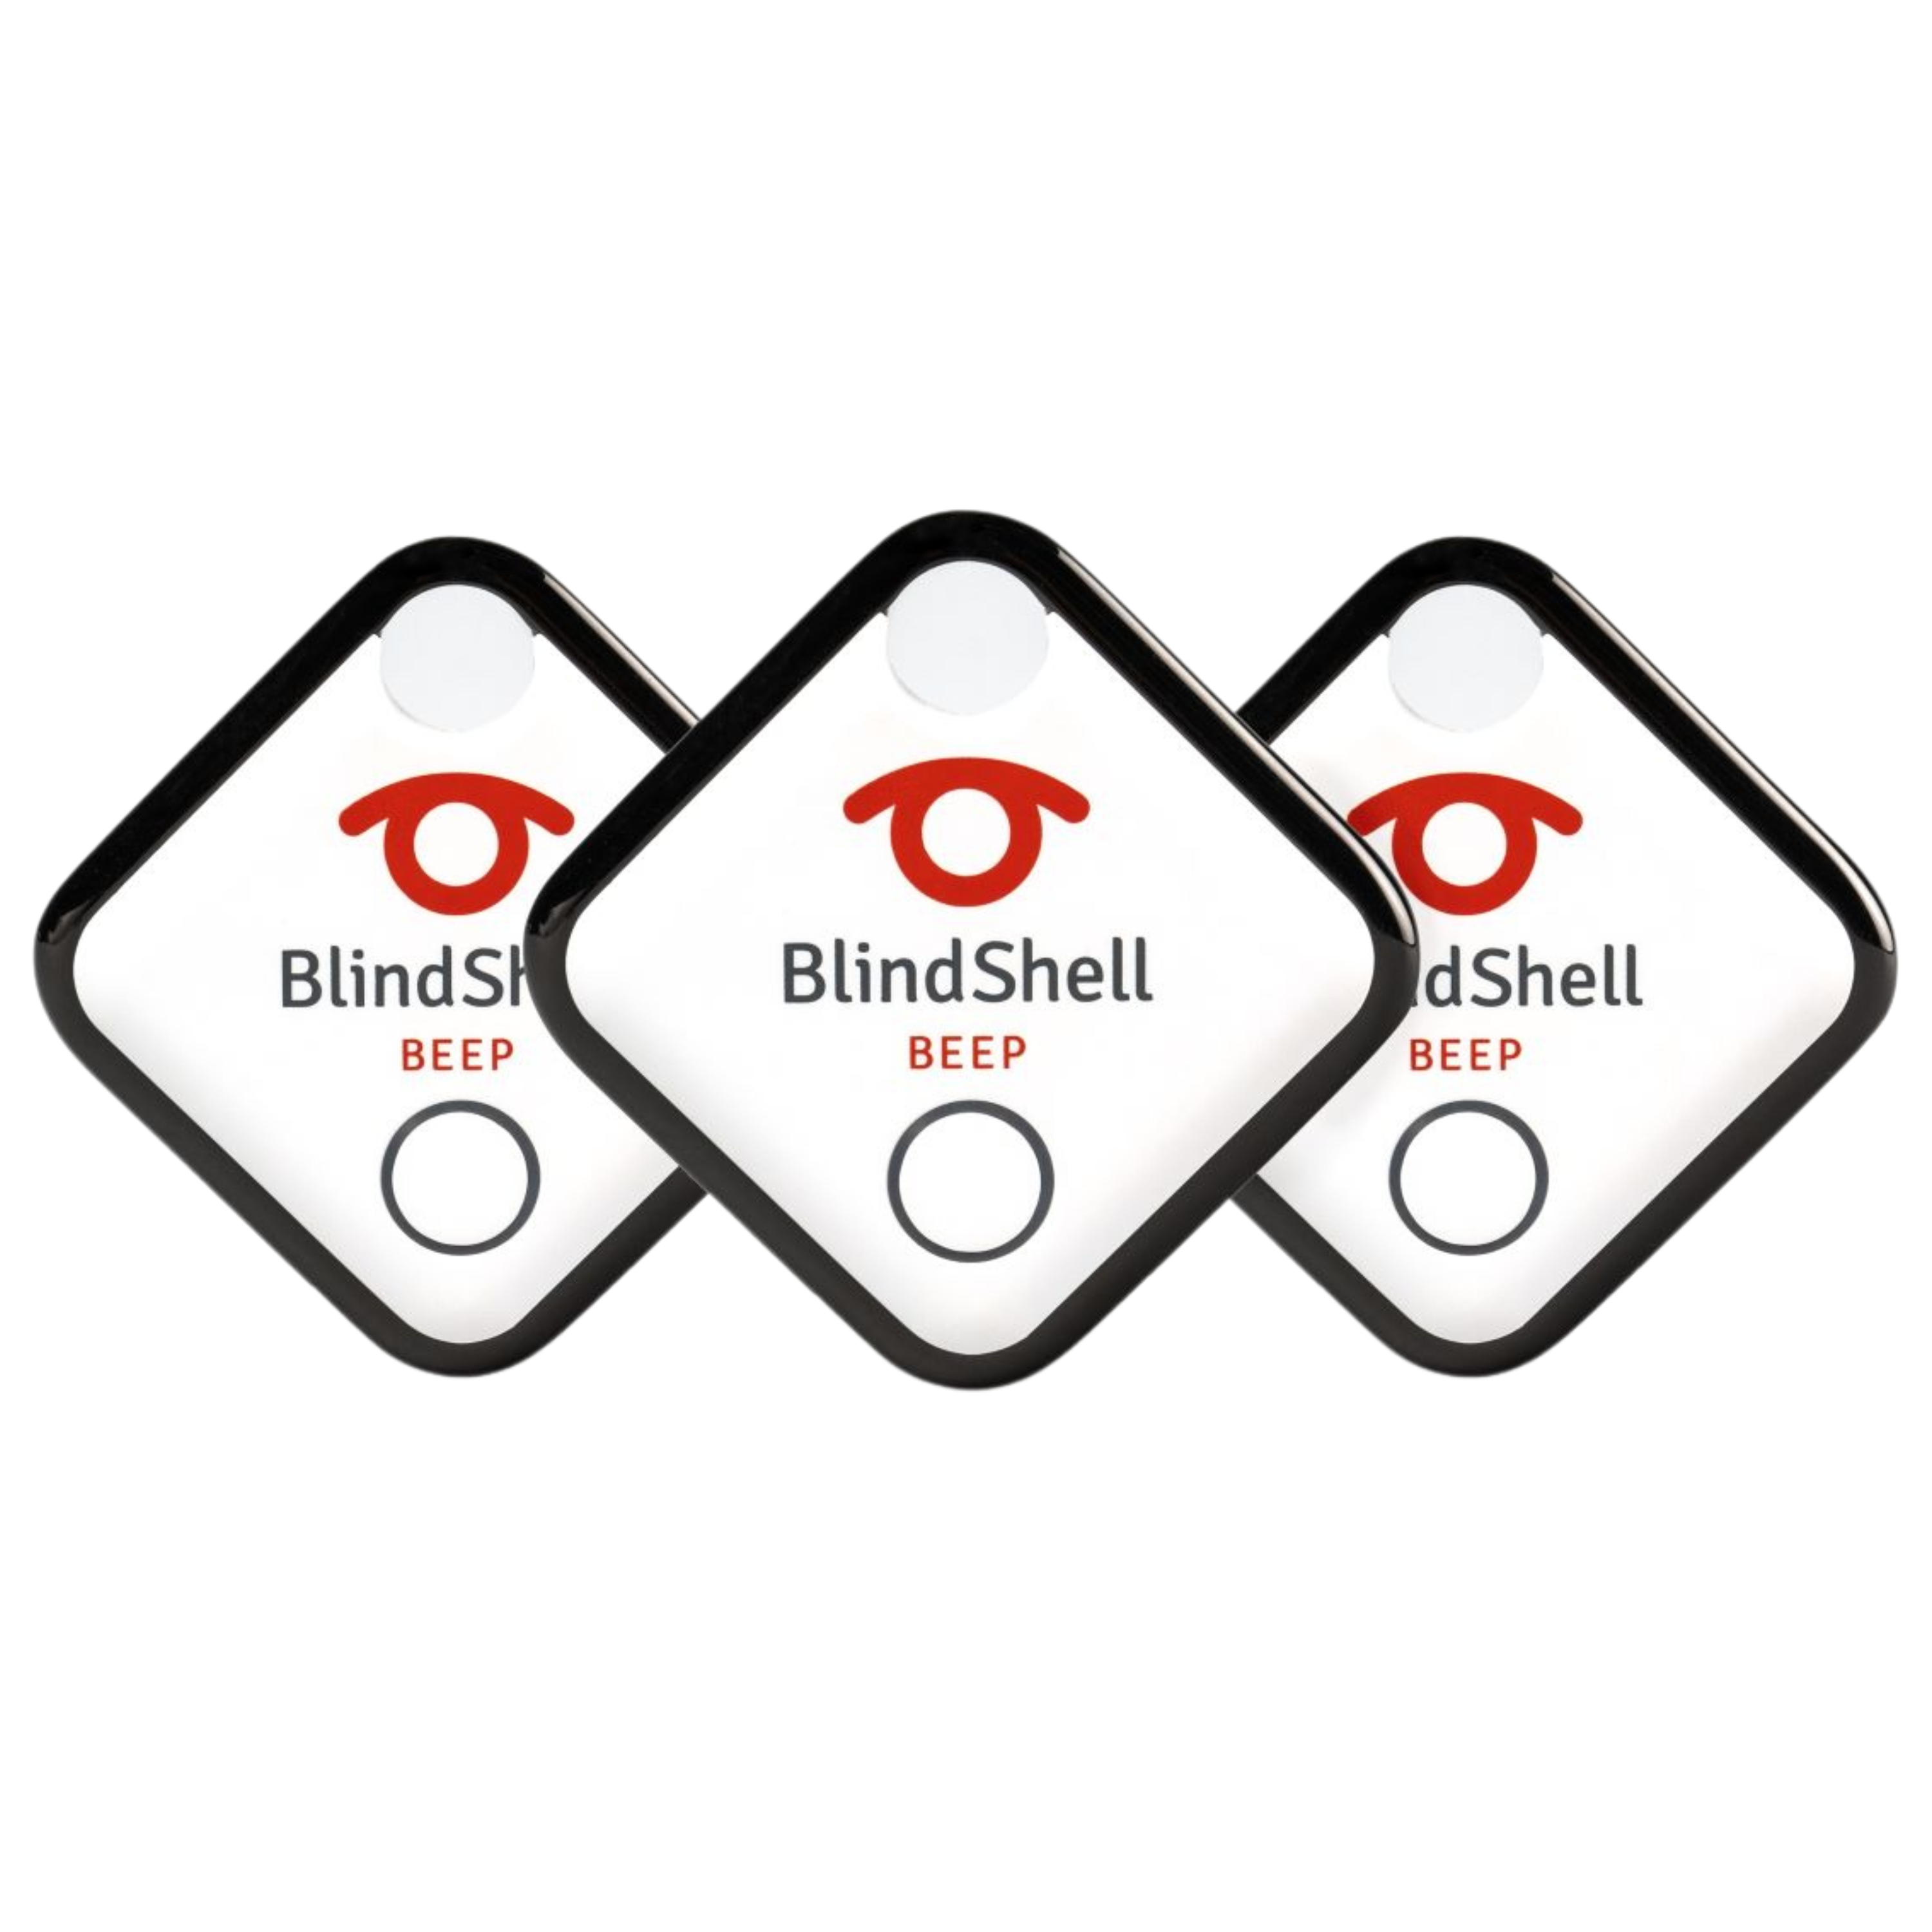 3 Blindshell beeps